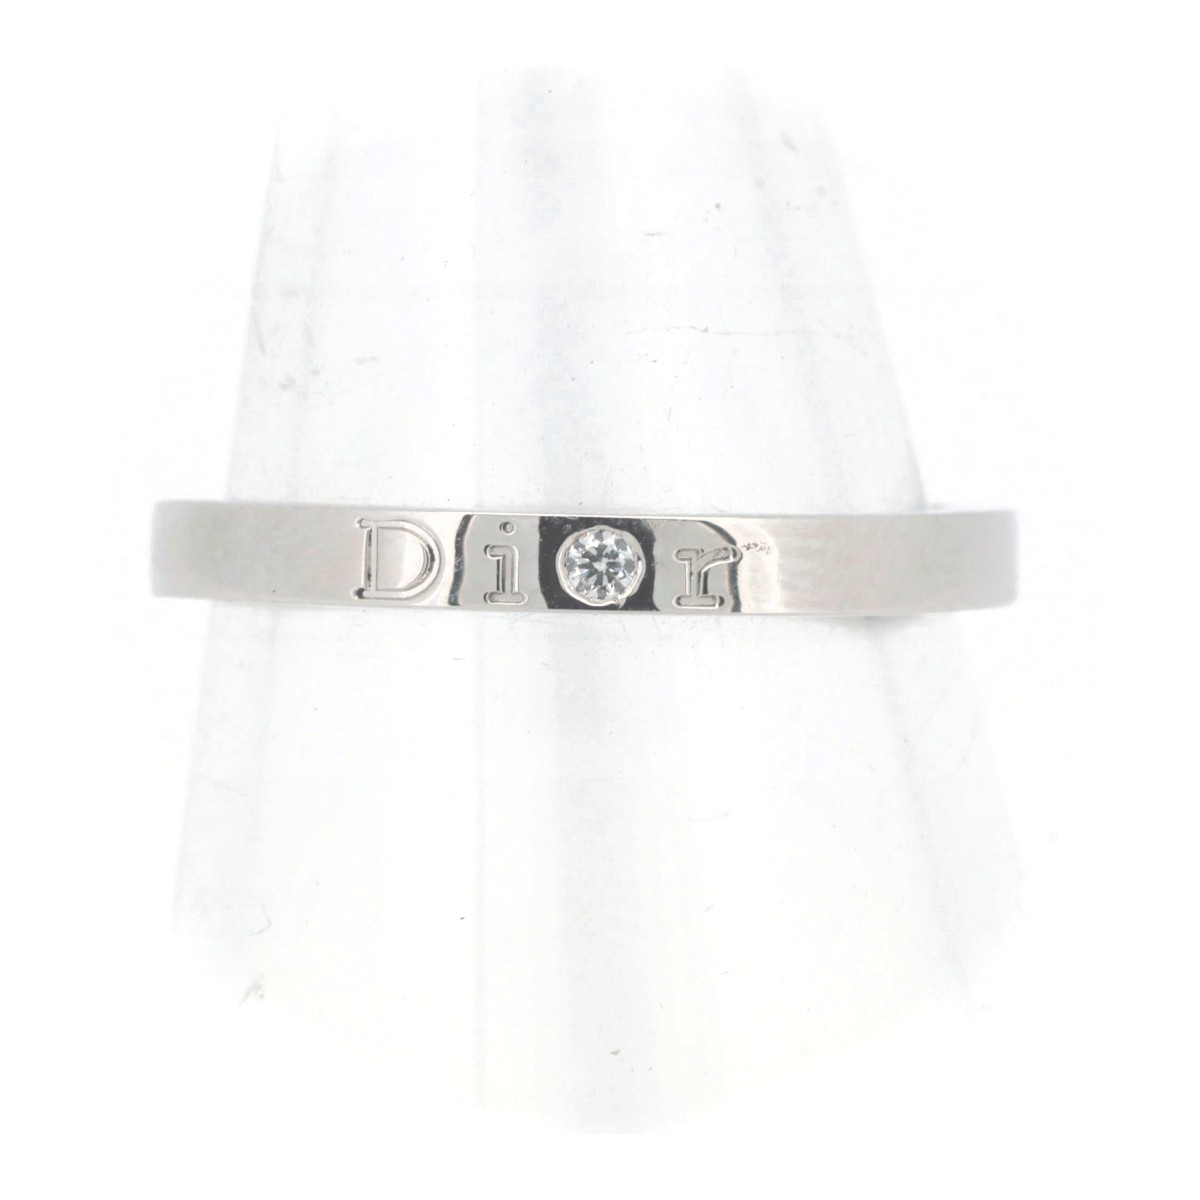 ディオール ダイヤモンド リング 指輪 16.5号 PT950(プラチナ) 質屋出品